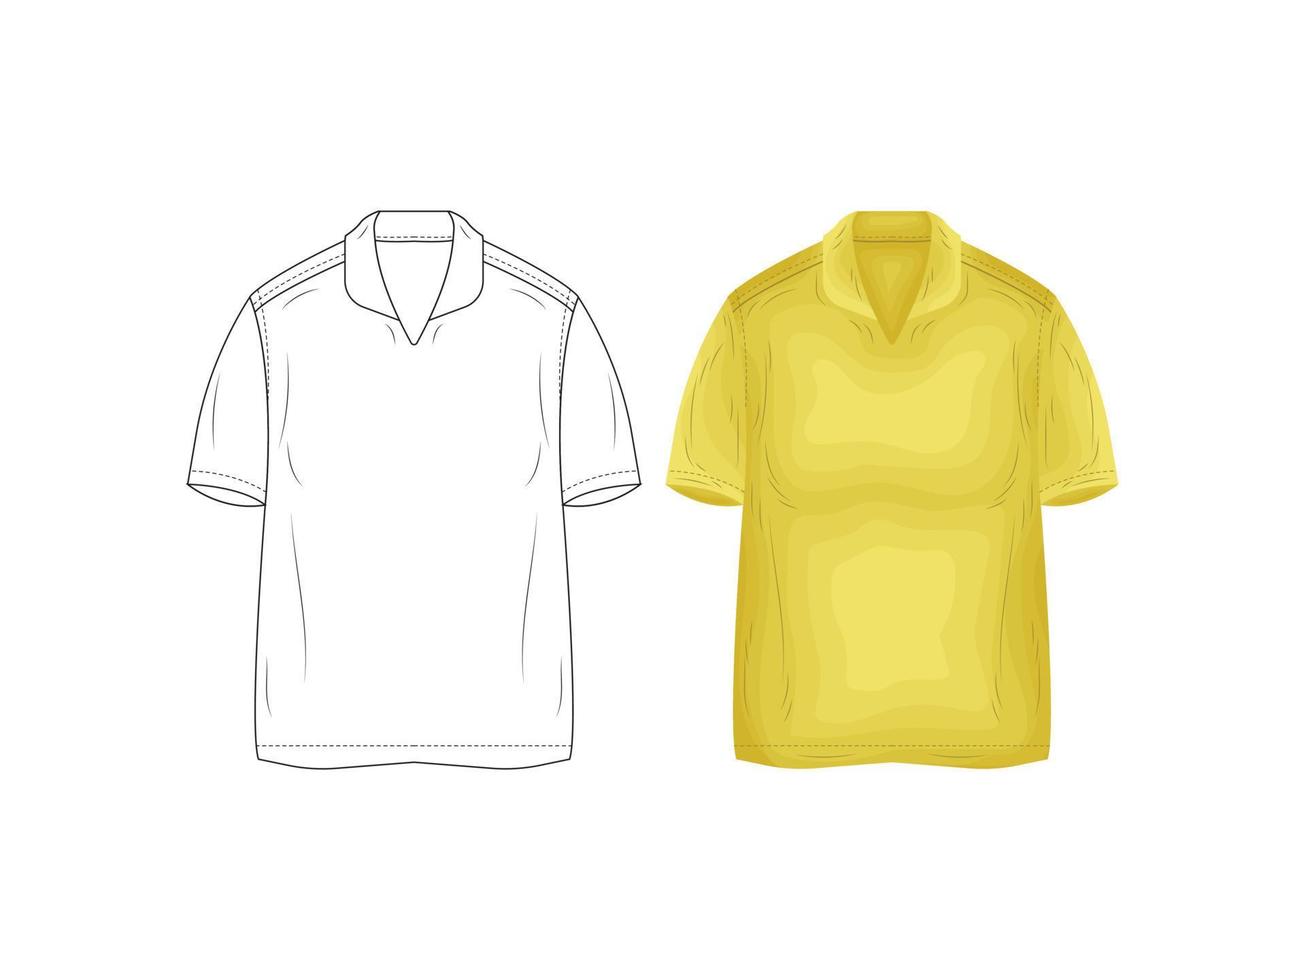 Modeproduktkatalog Uniformen Mockup Skizze Vektor Illustration Kleidung Silhouette